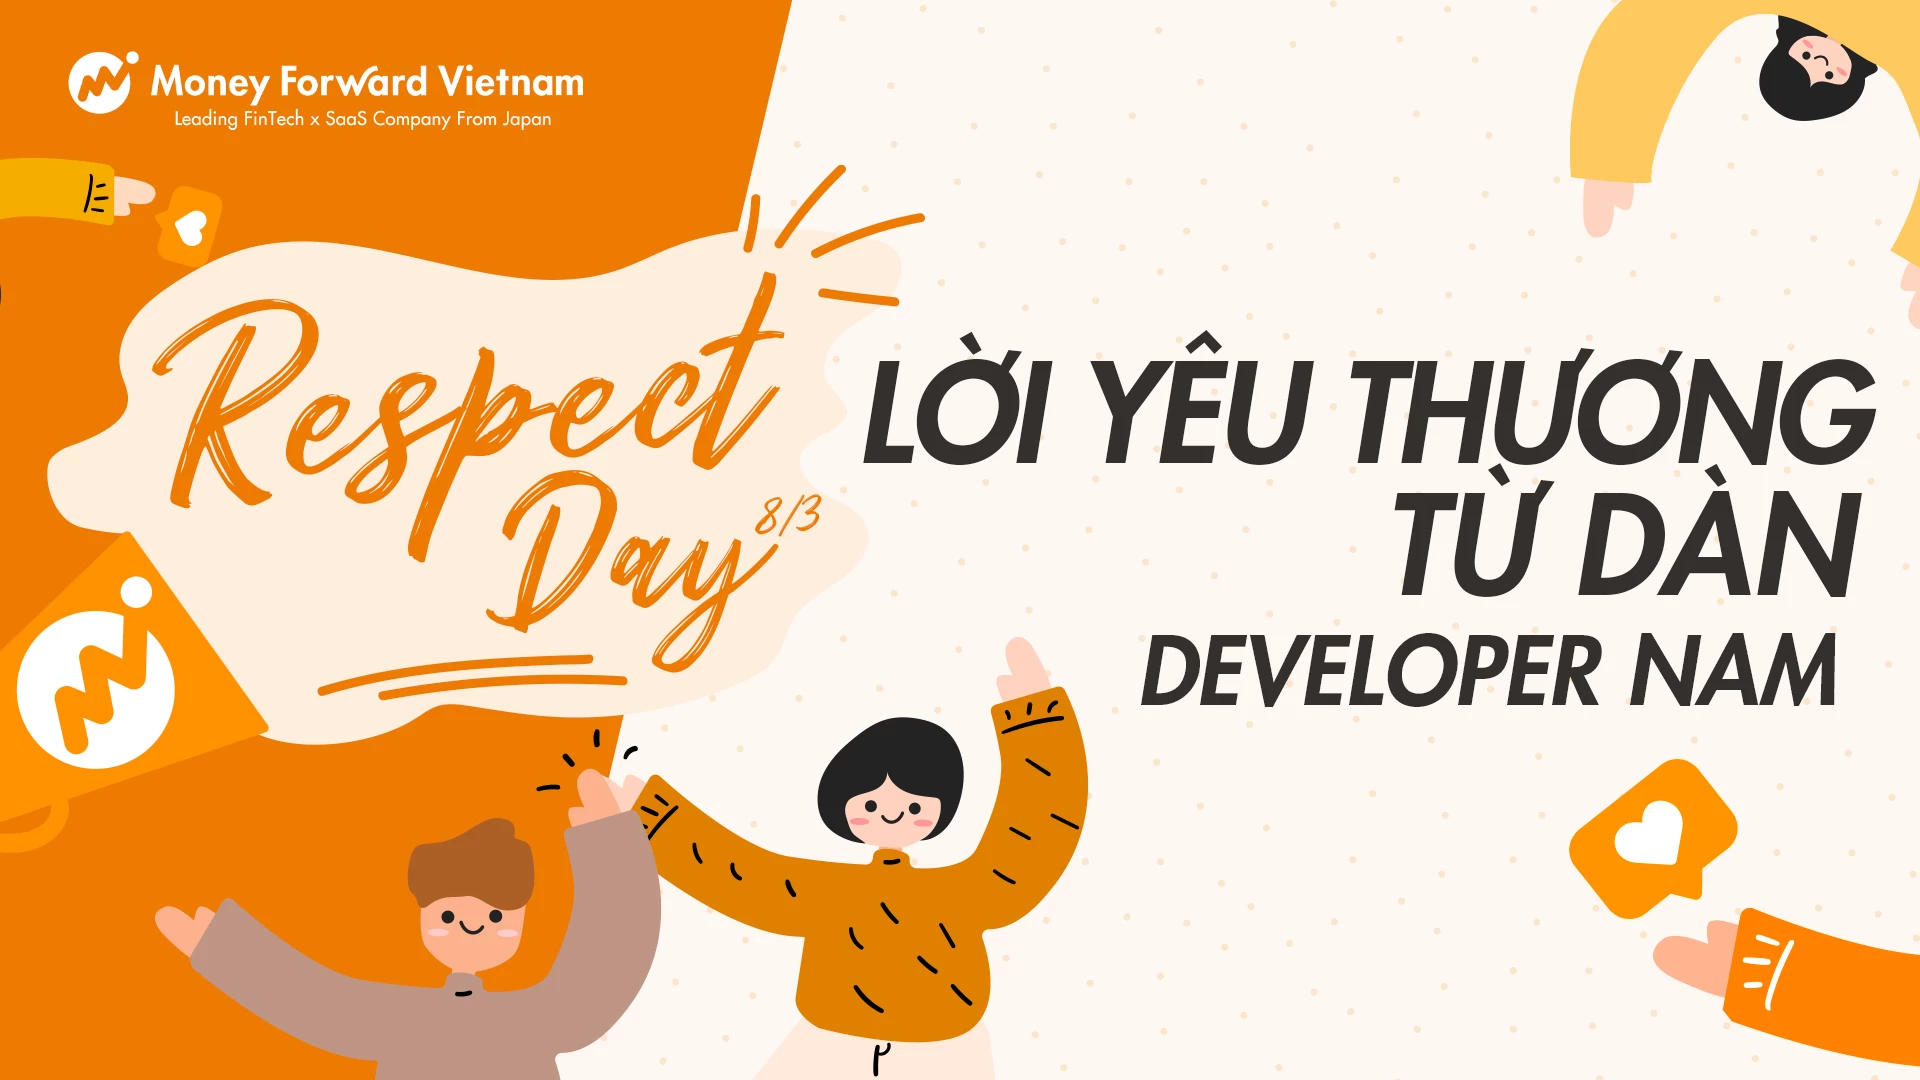 Respect Day 8/3 - Lời Yêu Thương Từ Dàn Developer Nam